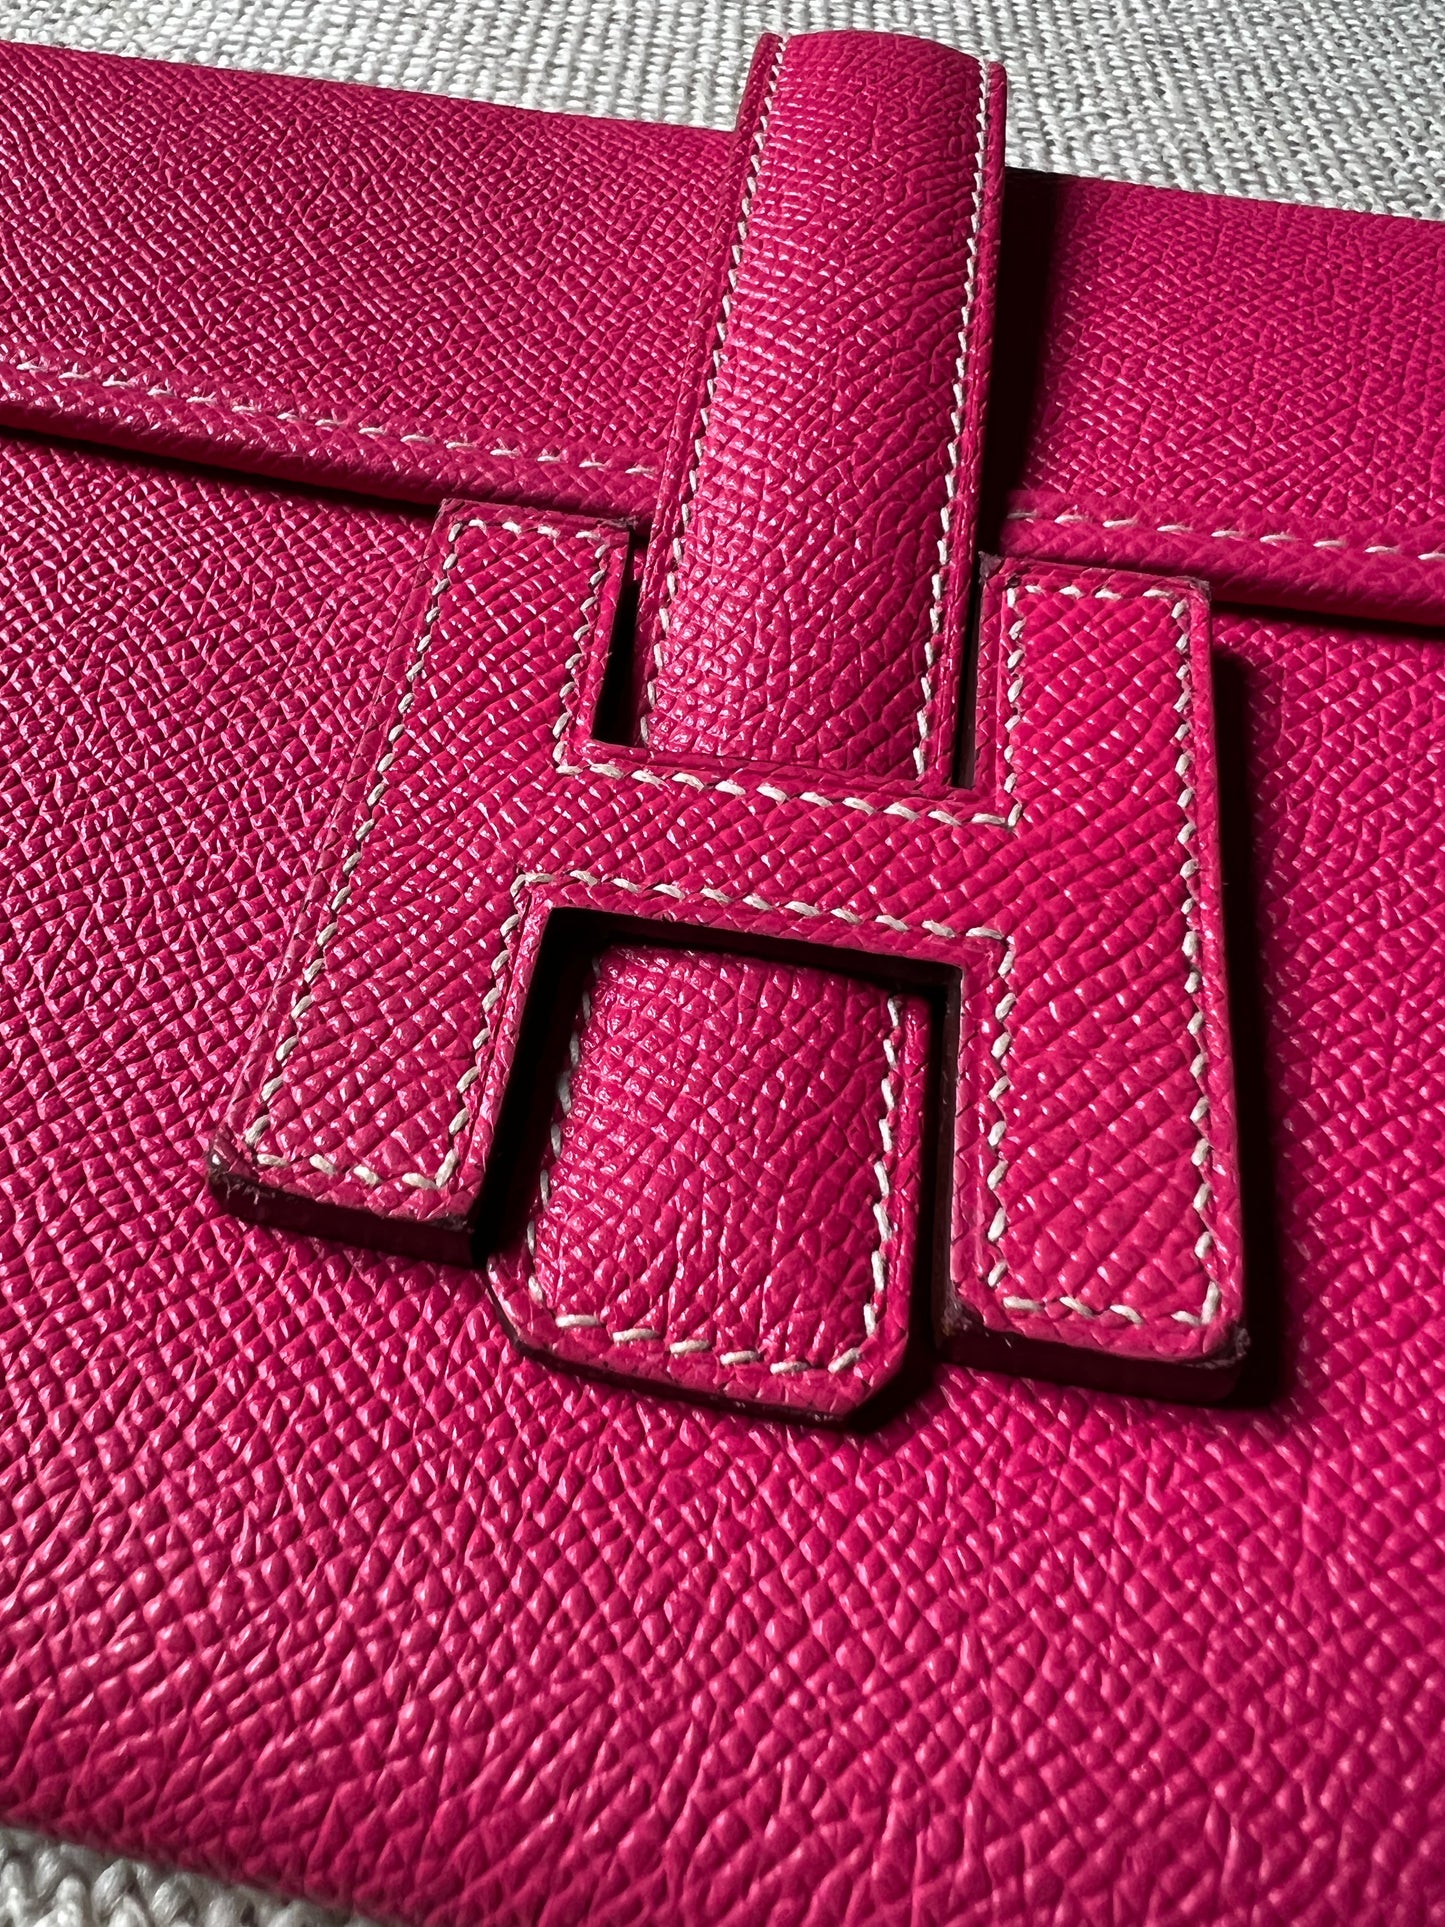 Hermes Red Epsom Jige Clutch Vintage - Vintage Lux